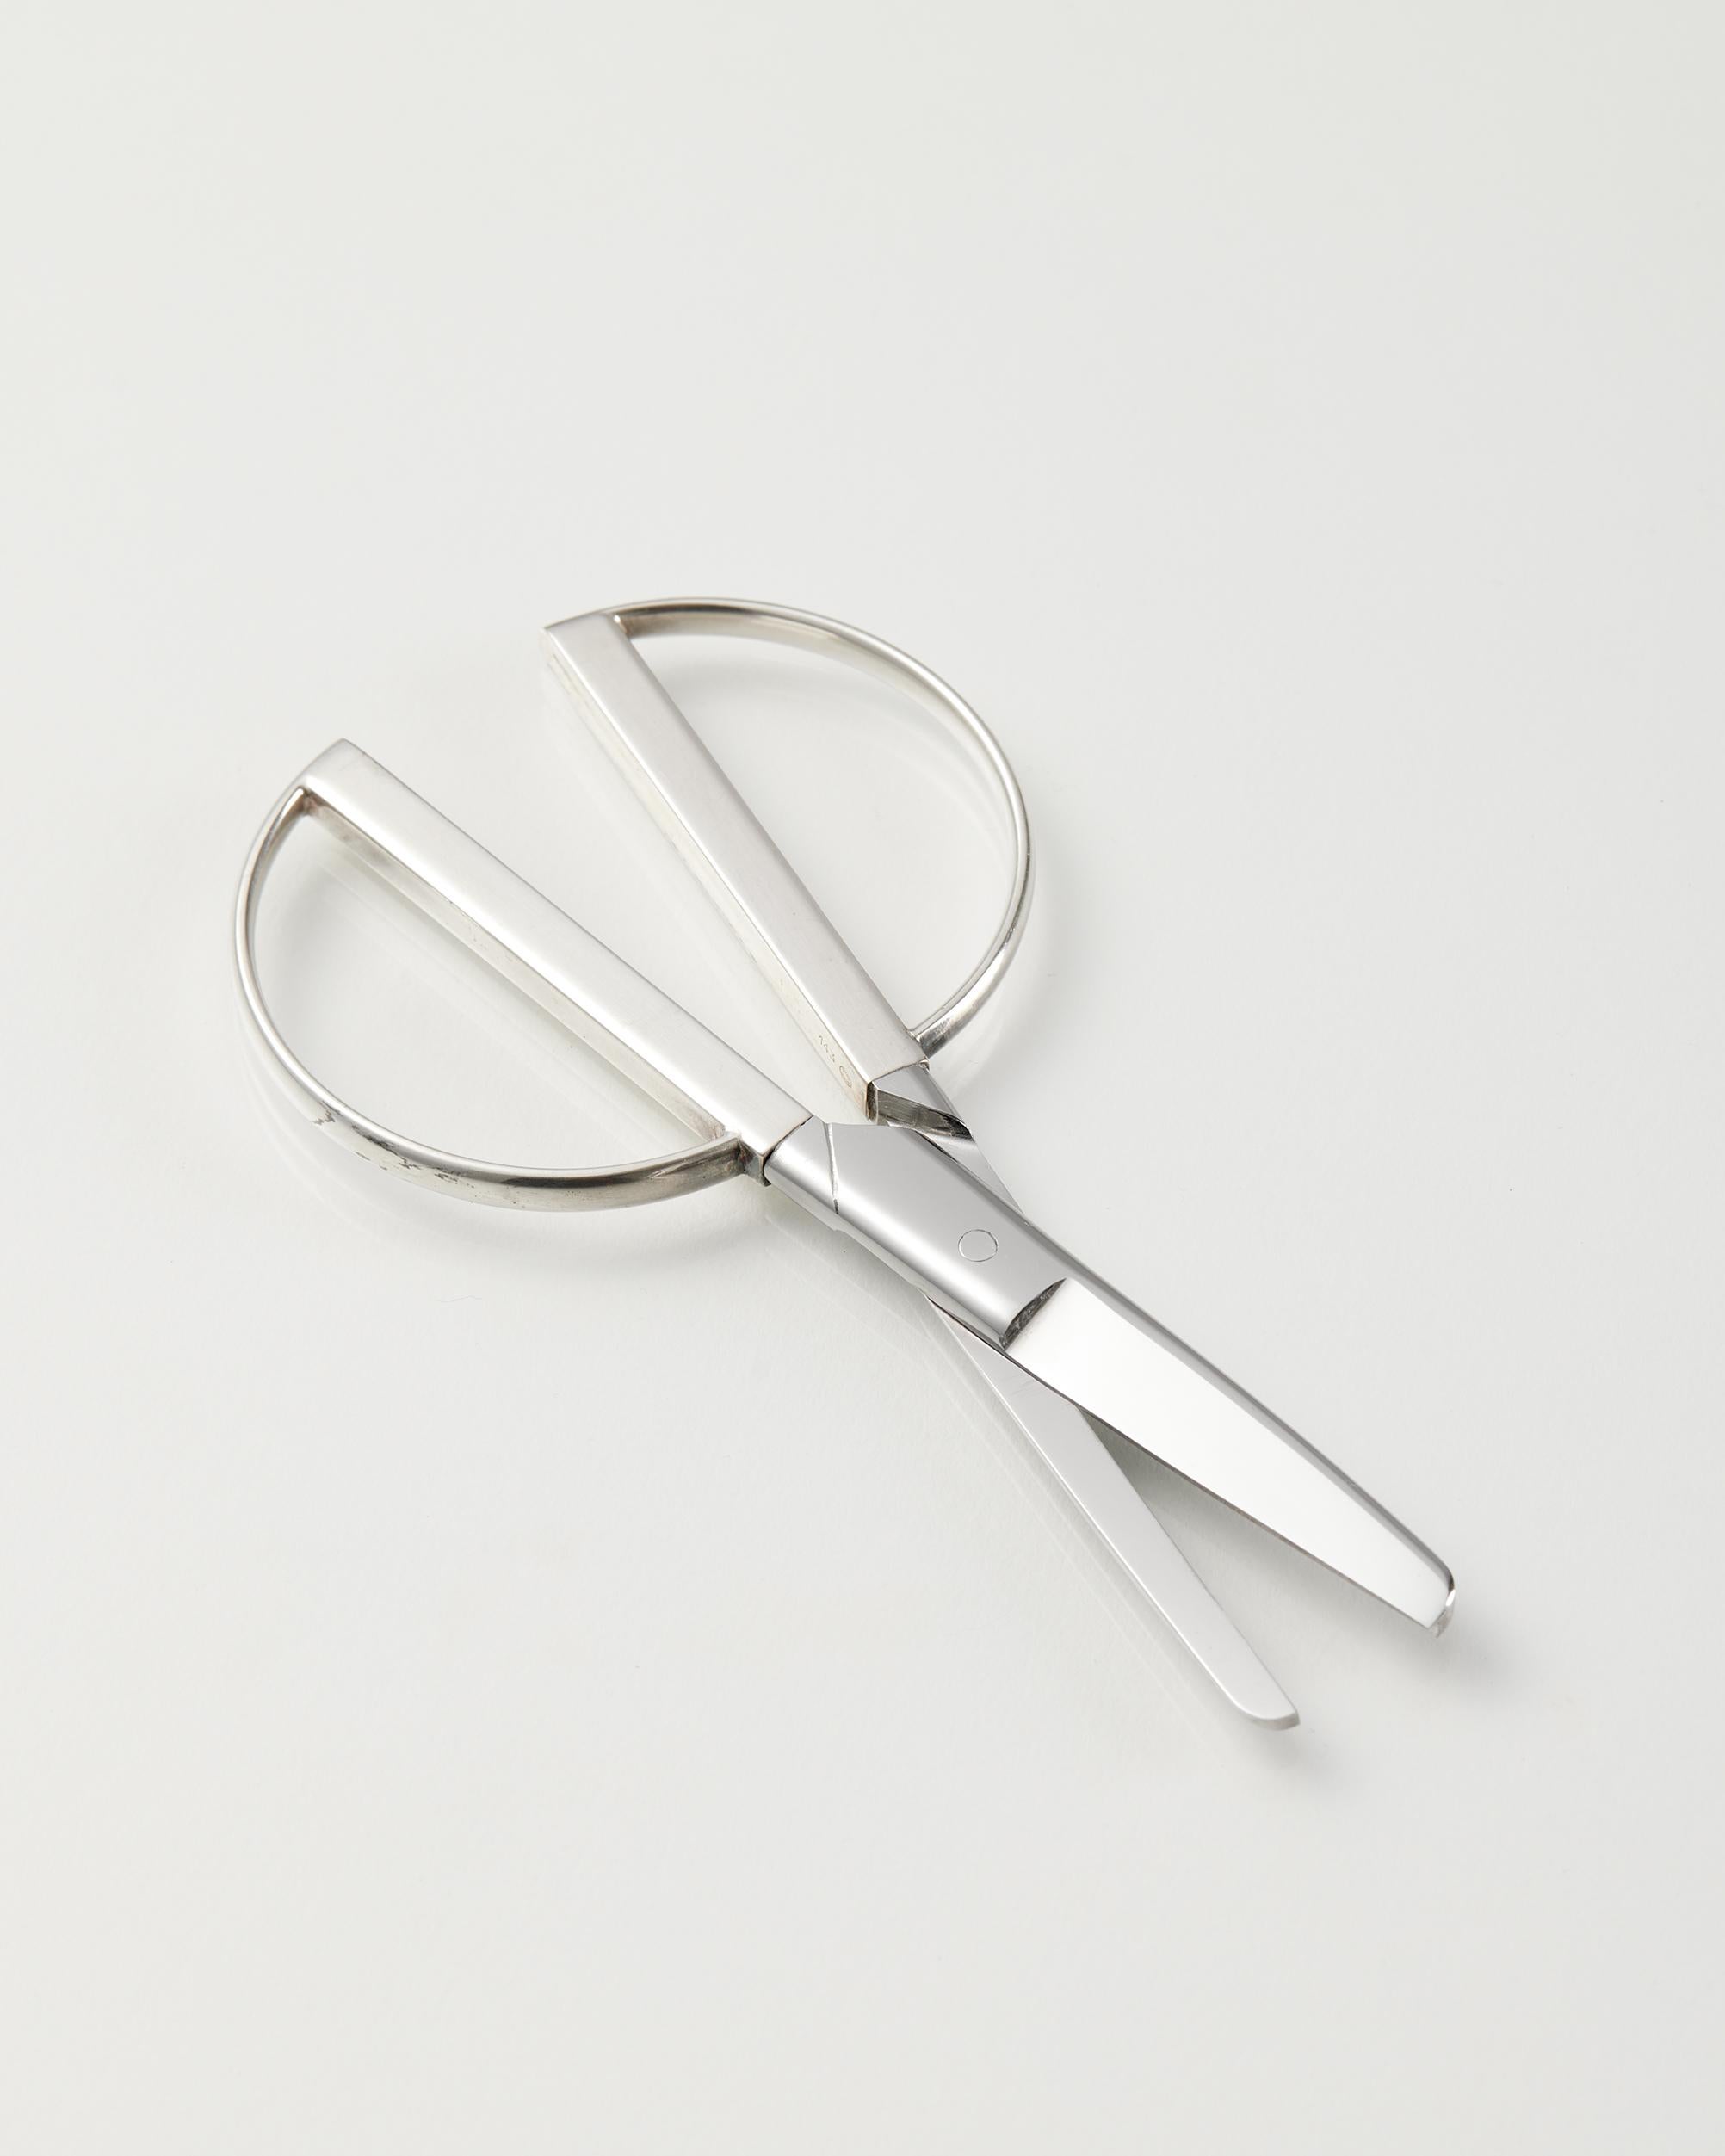 Danish Grape scissors designed by Georg Jensen, Denmark, 1960s